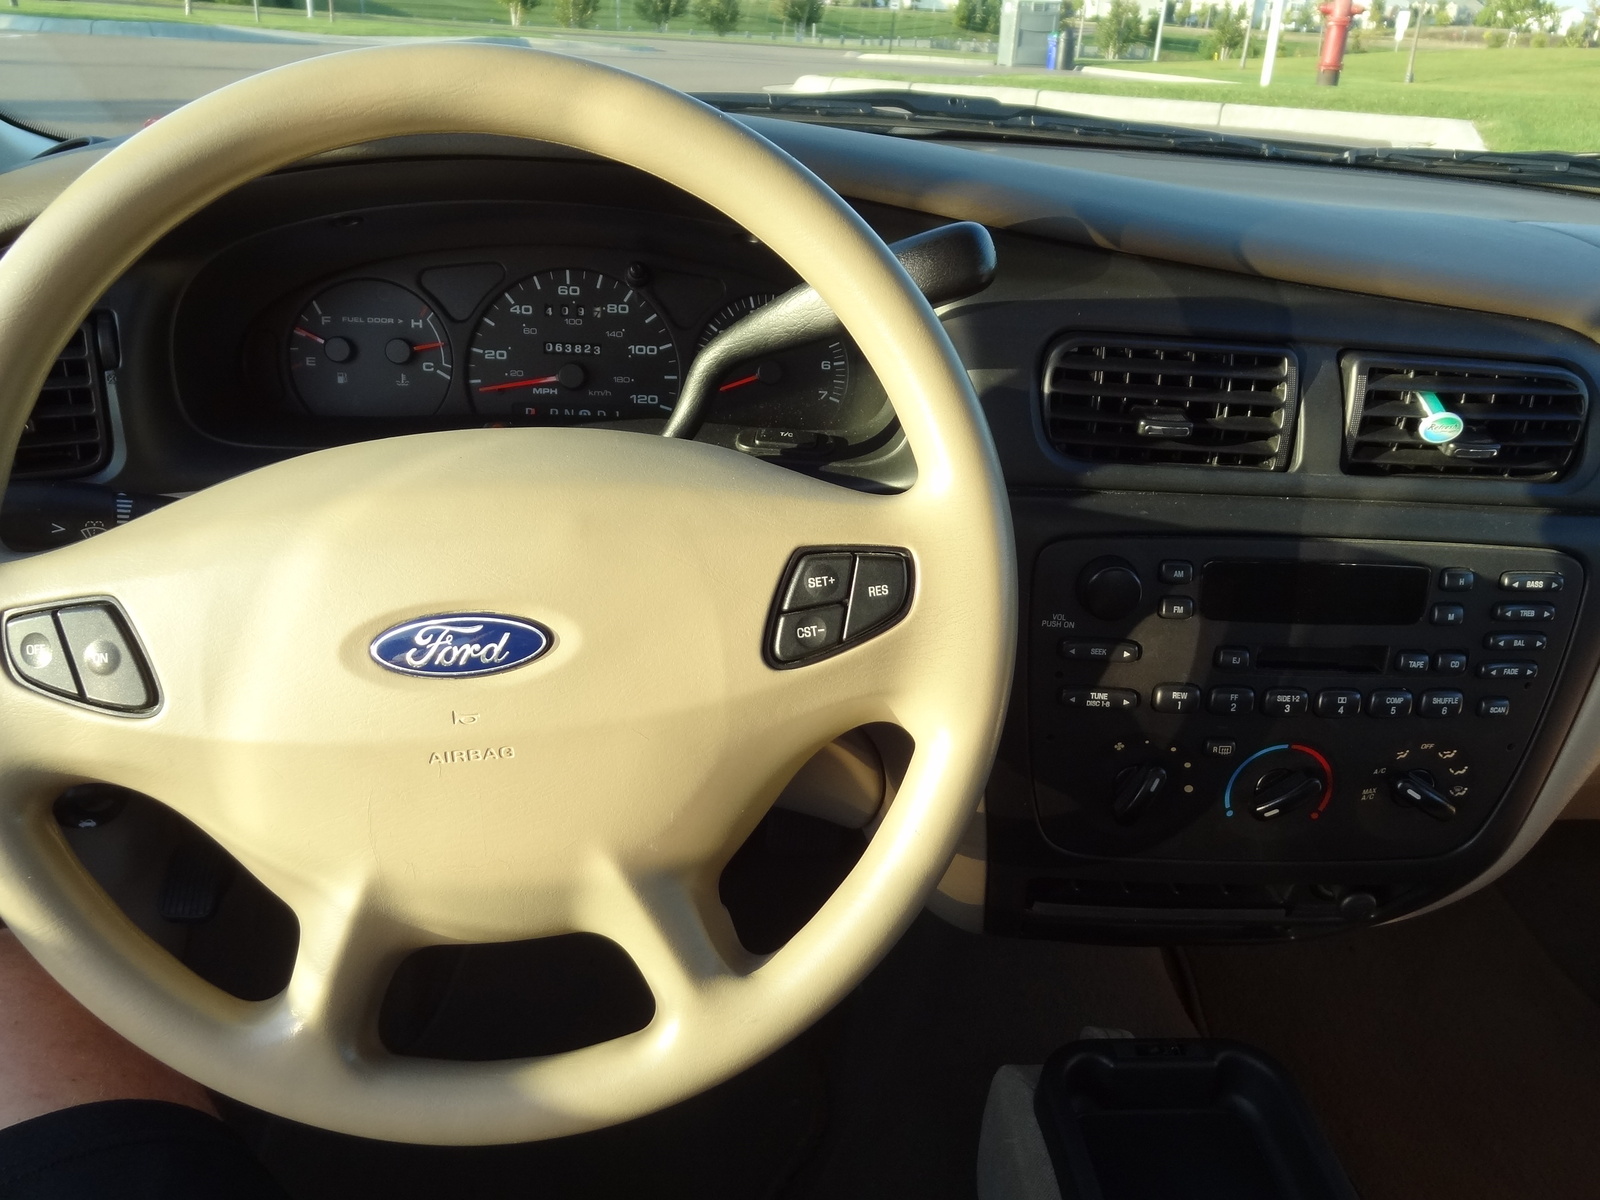 2000 Ford taurus interior pictures #2